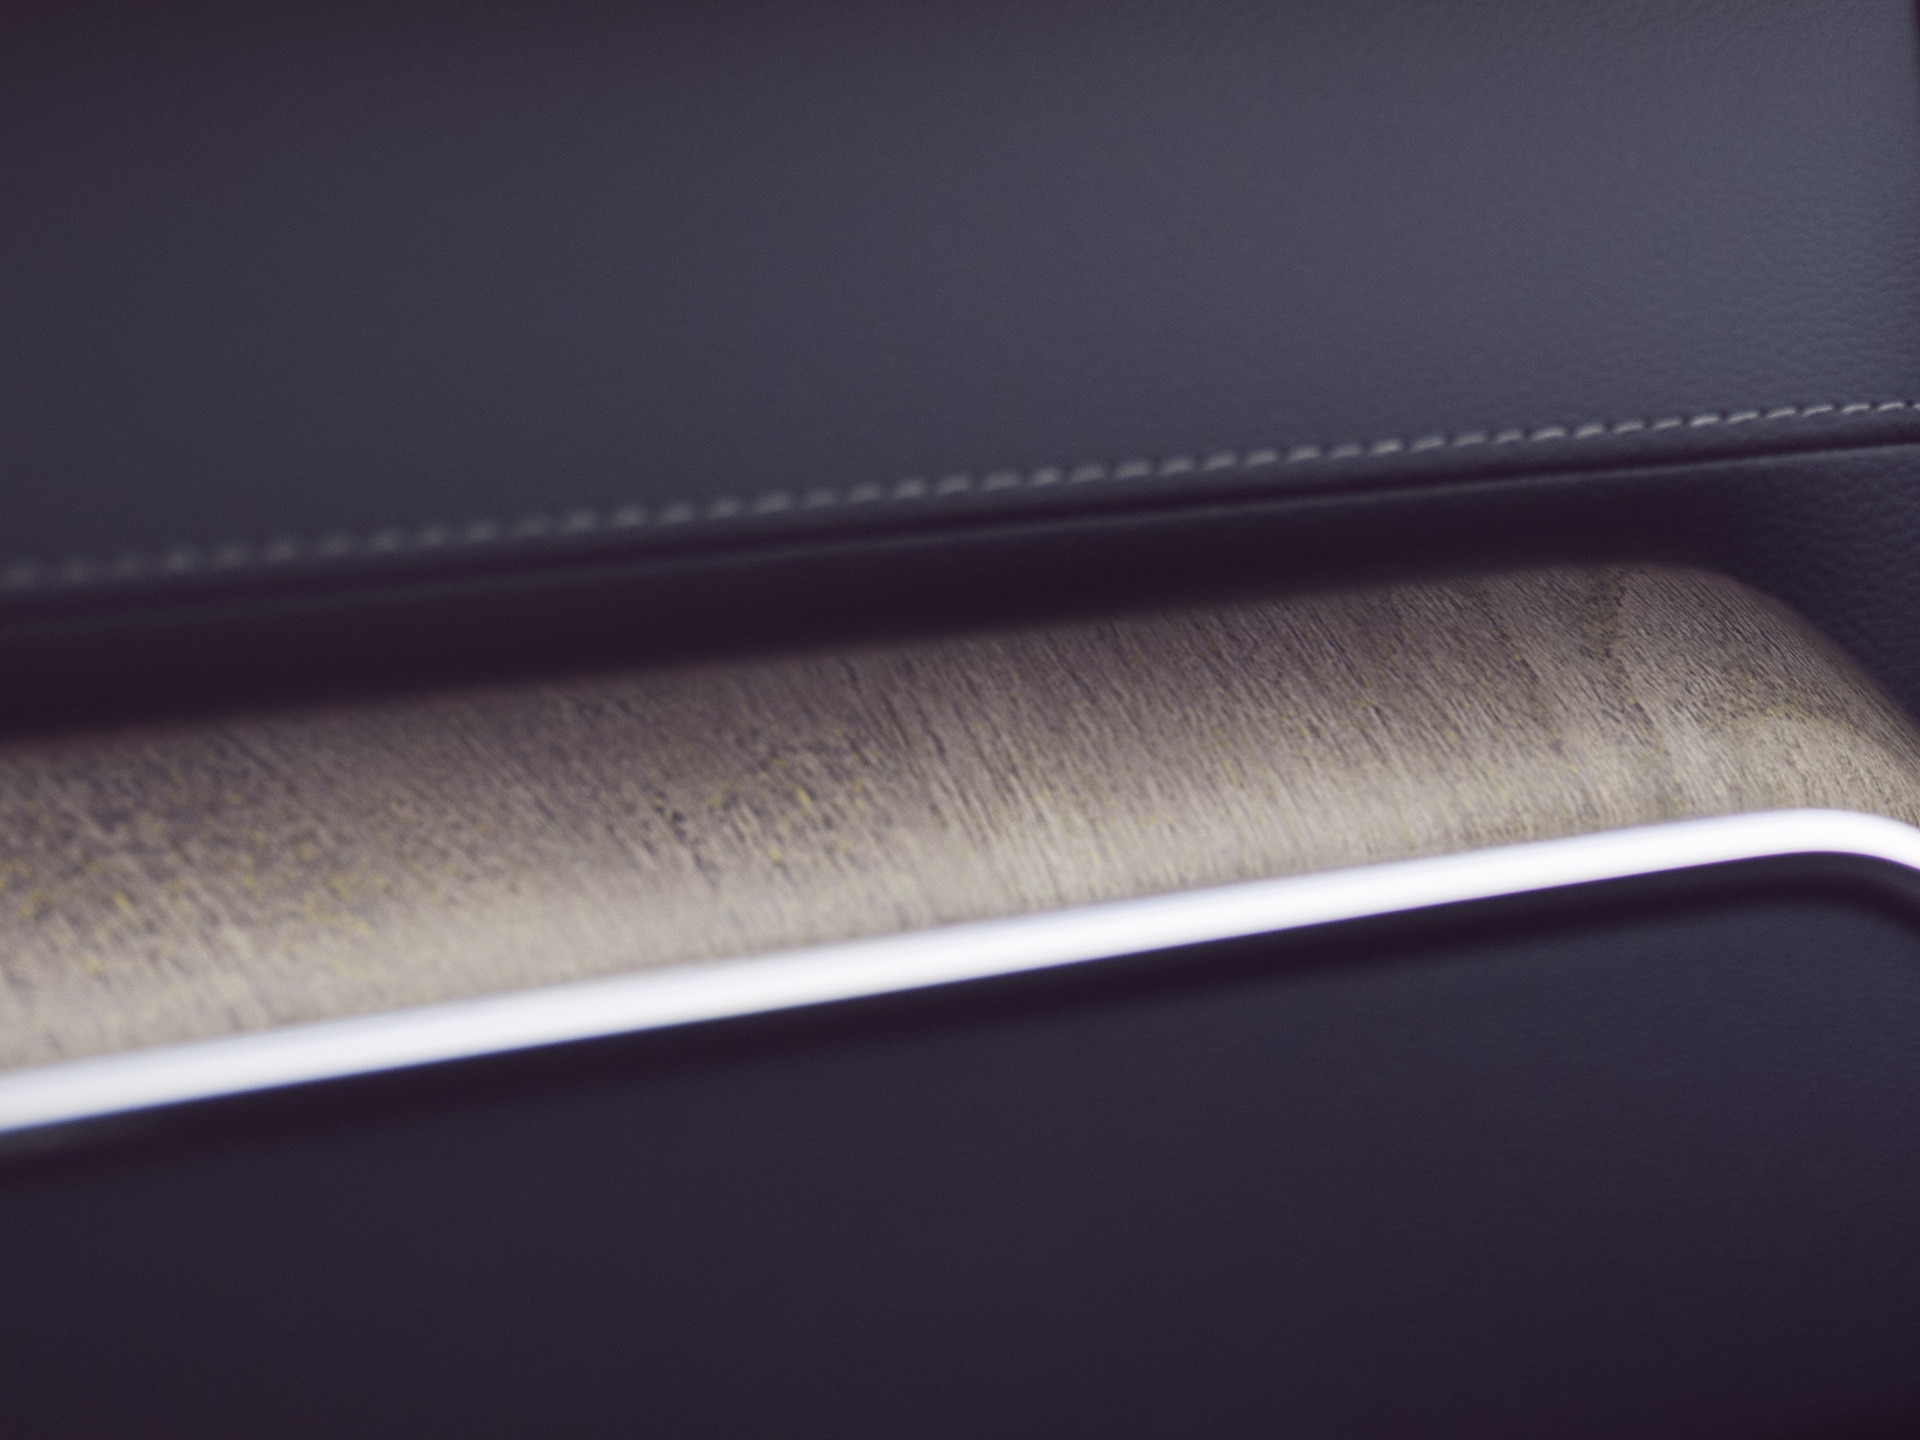 Les incrustations décoratives en bois du Volvo XC60 apportent une touche naturelle.